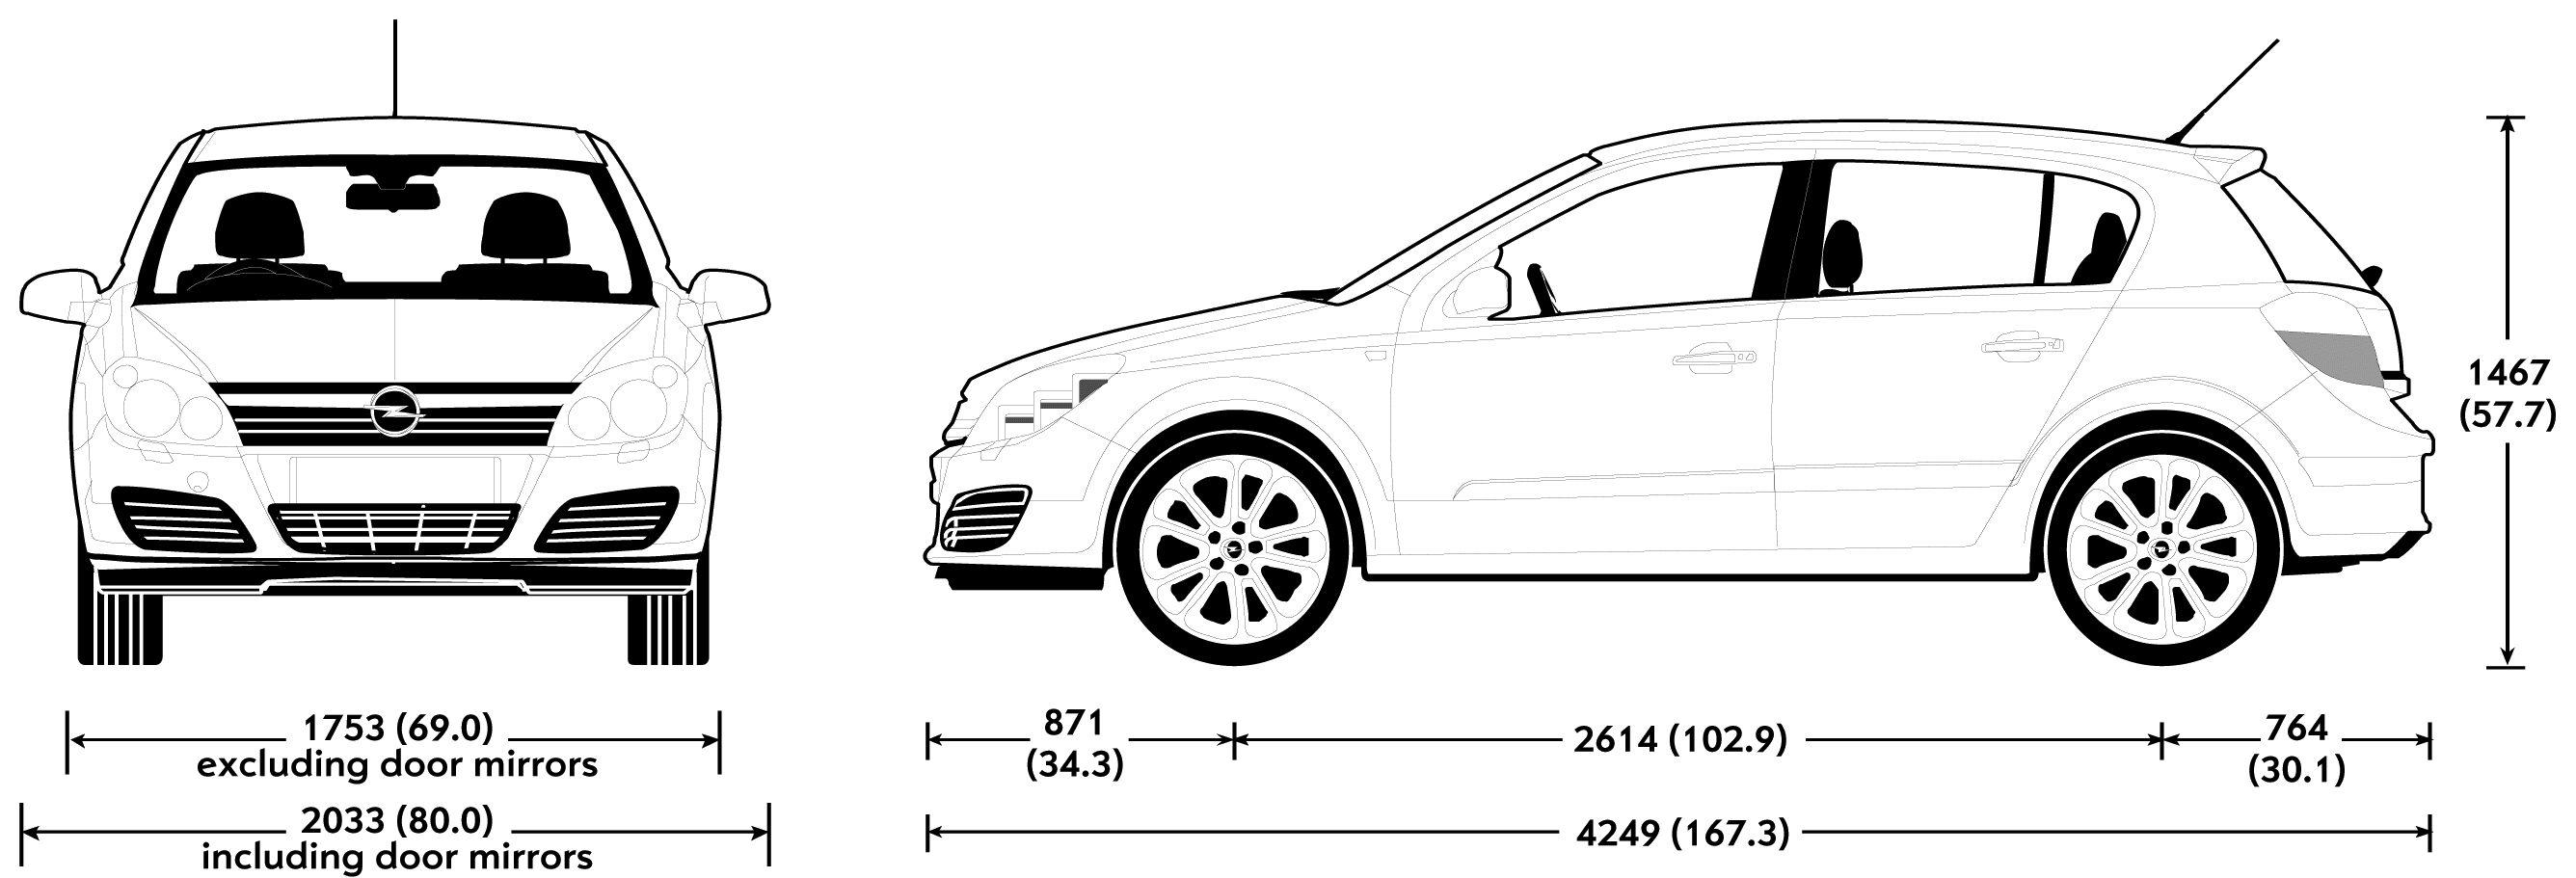 2007 Opel Astra Hatchback blueprints free - Outlines